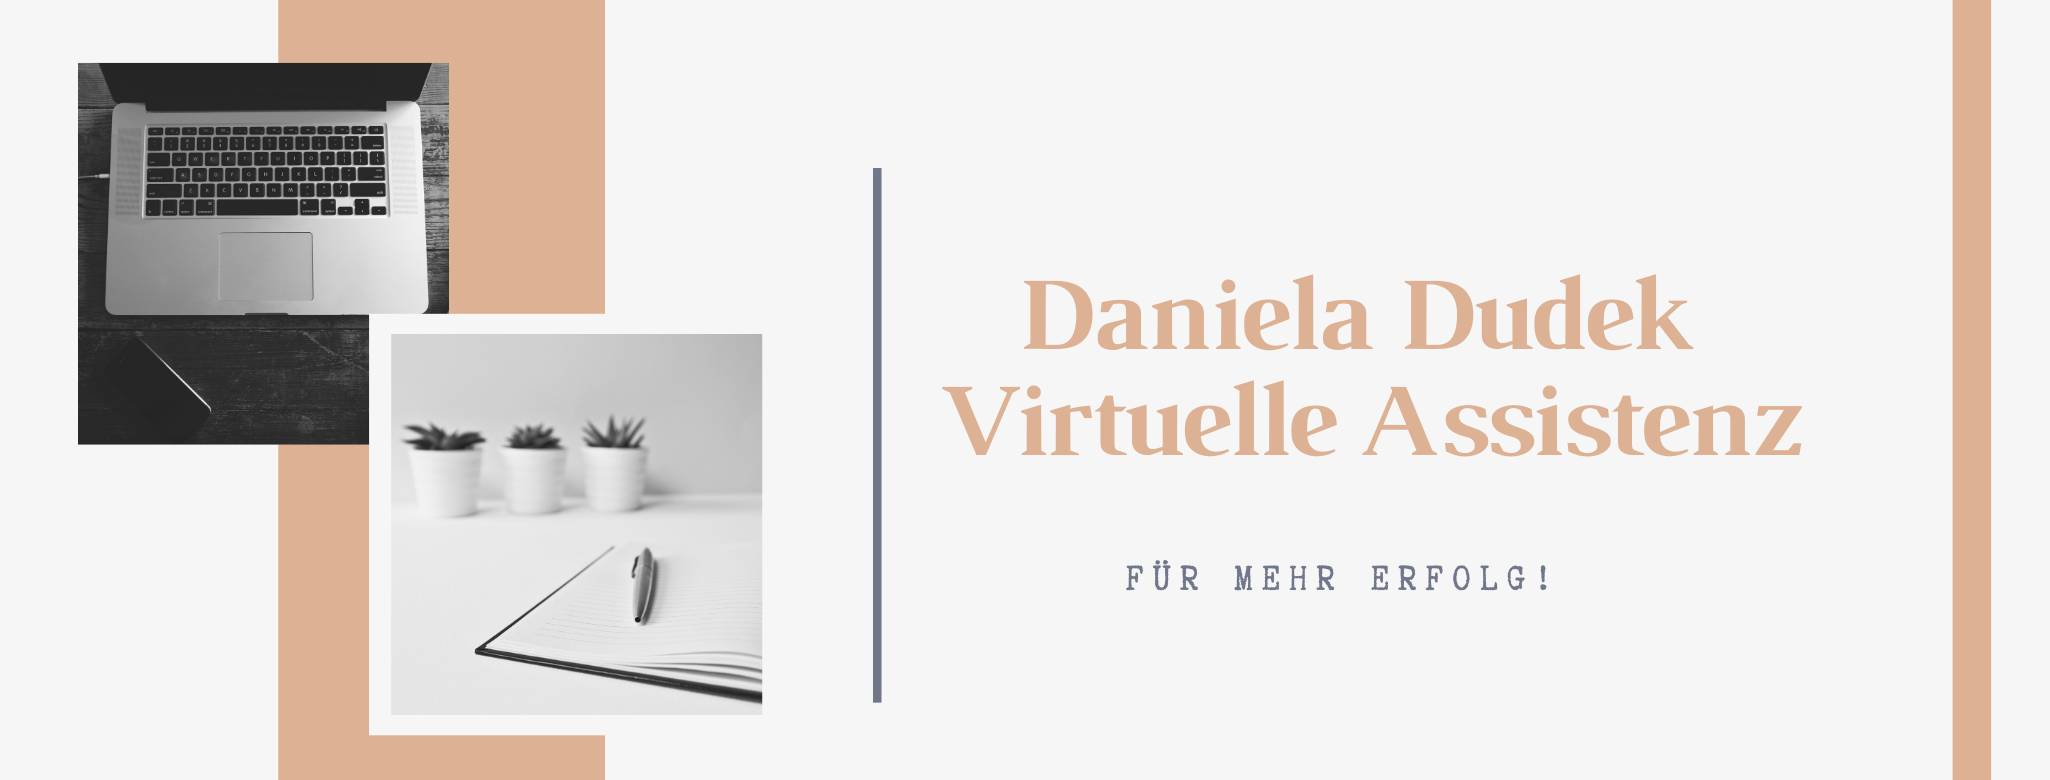 Daniela Dudek - Virtuelle Assistenz Logo